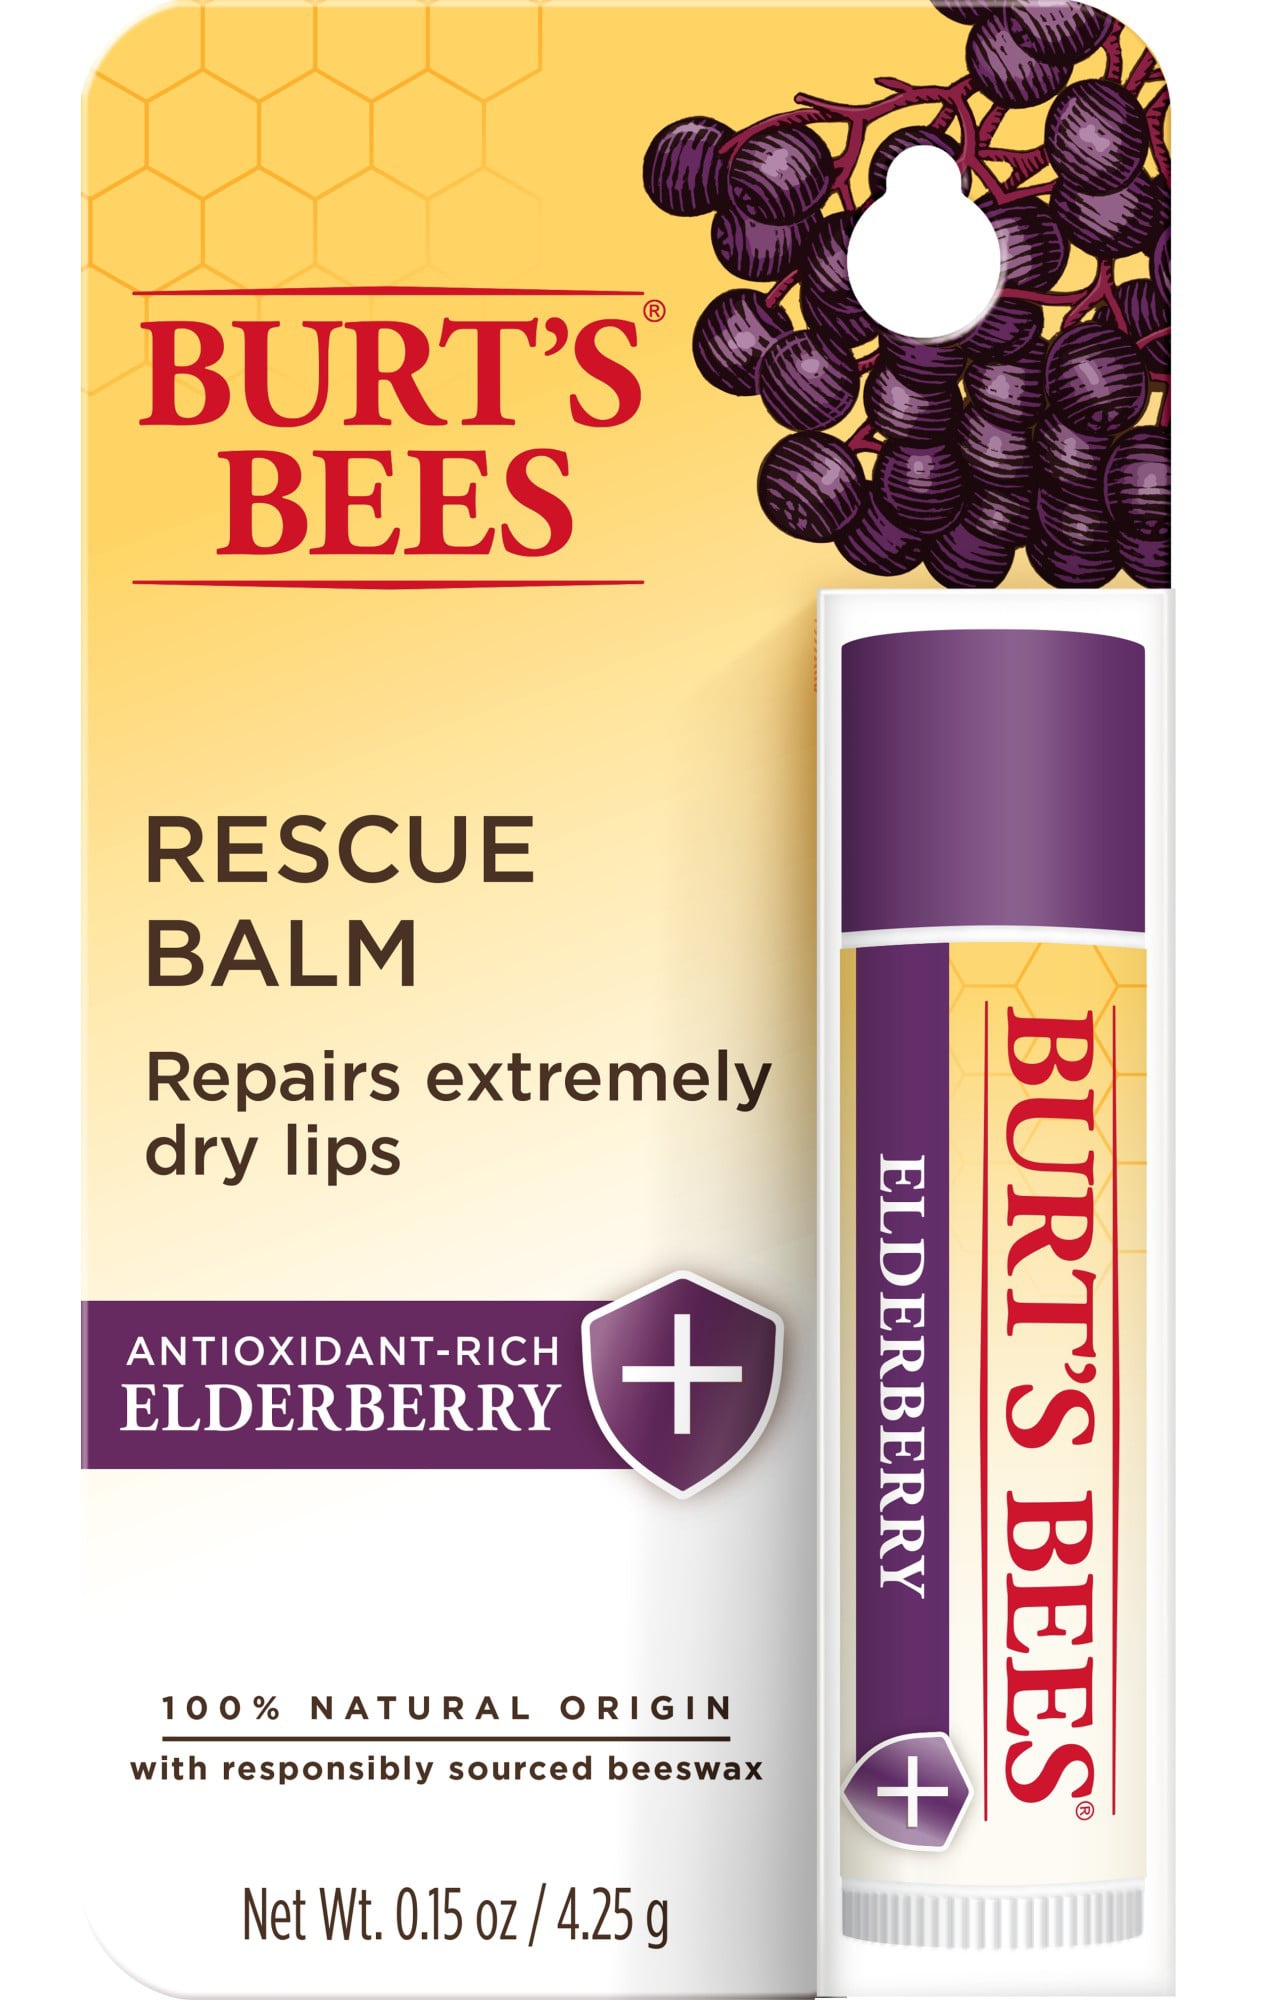 Burt's Bees Elderberry Rescue Balm With Antioxidants